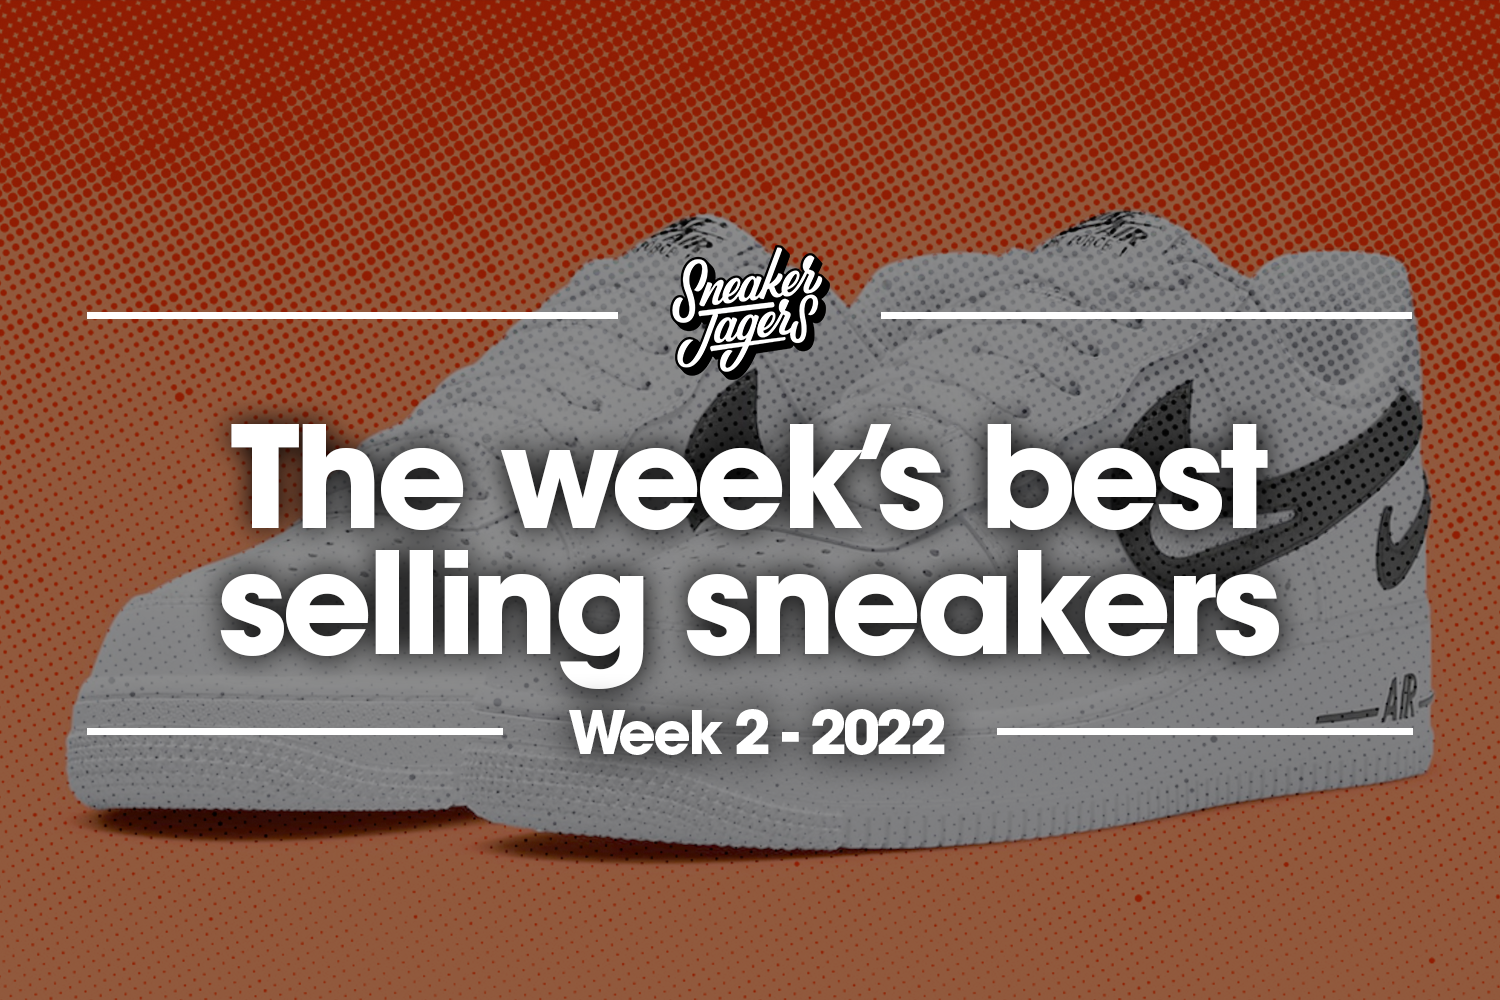 De 5 bestverkochte sneakers van week 2